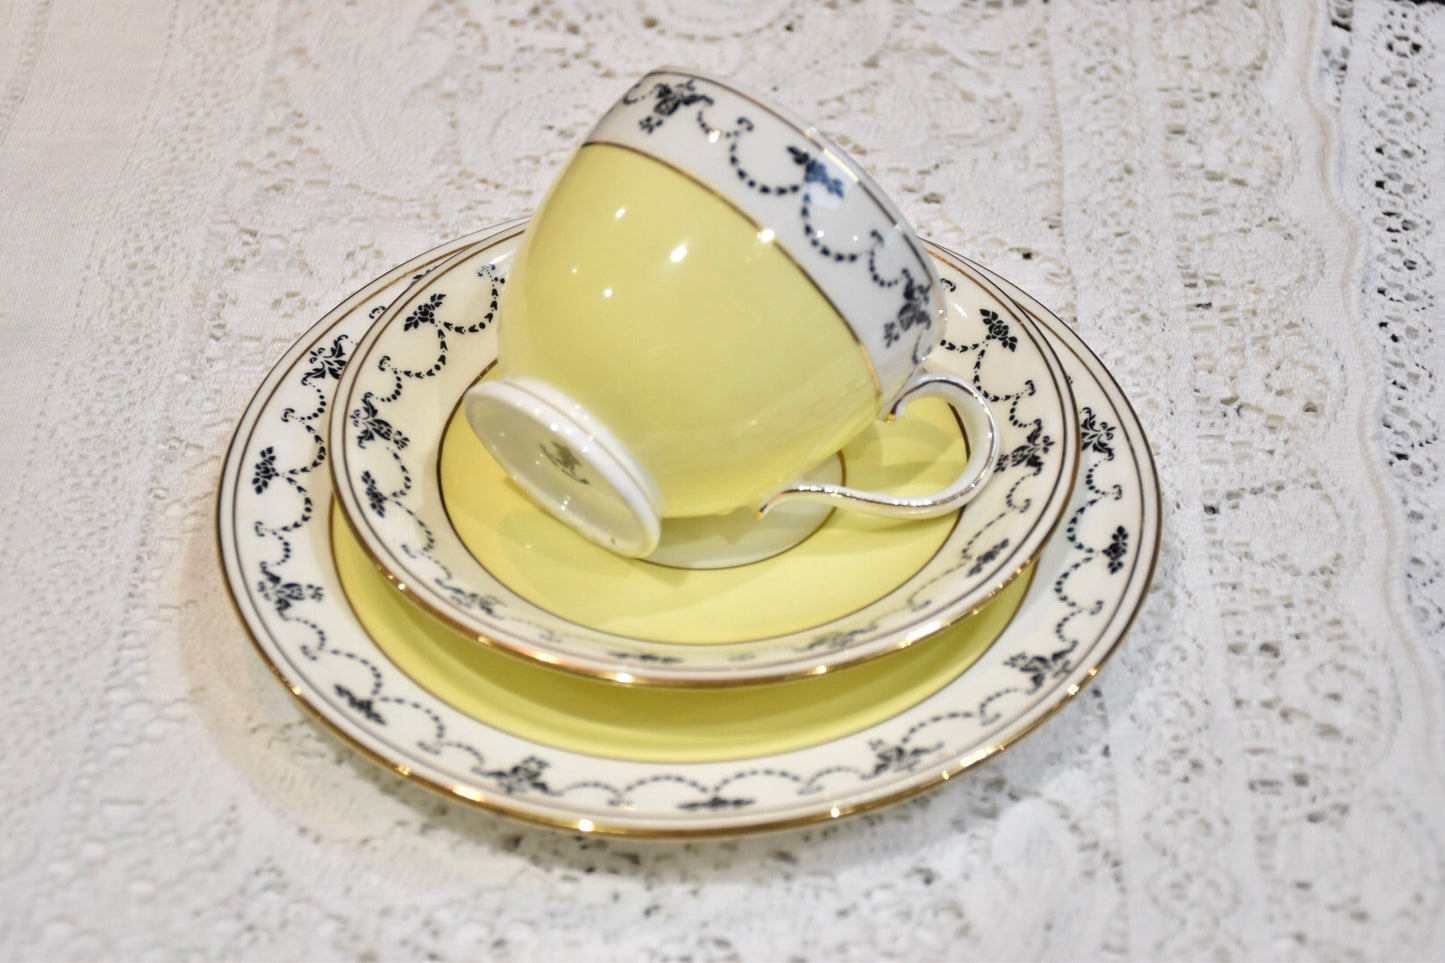 Springtime Yellow Teacup & Saucer Set